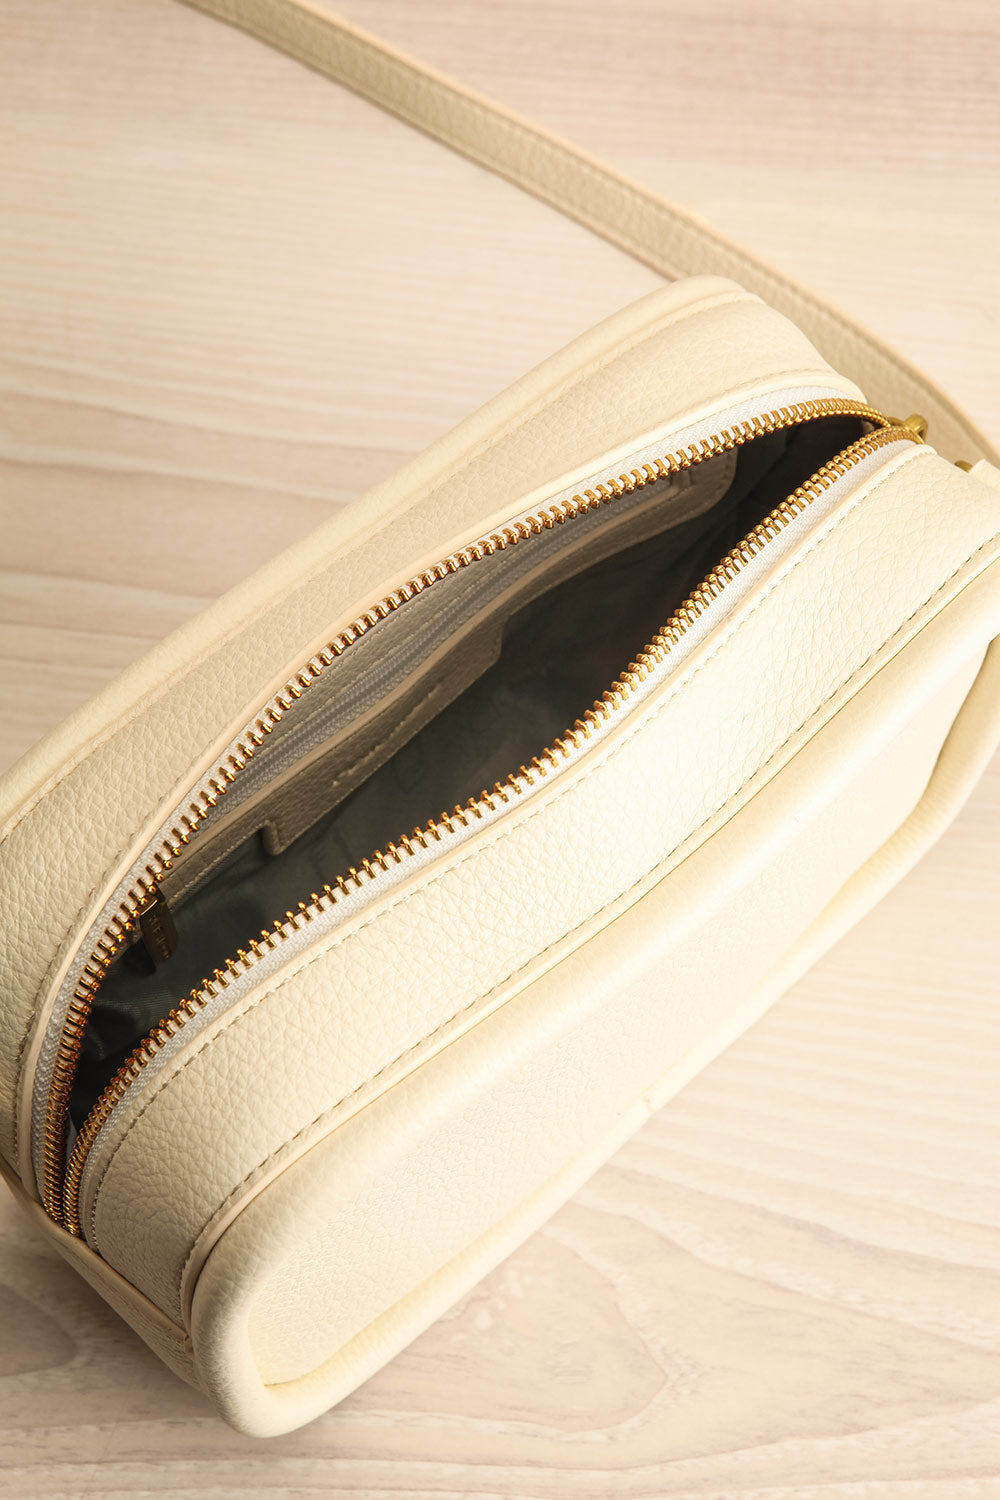 Eriqua Ivory Shoulder Bag w/ Removable Strap | La petite garçonne inside view